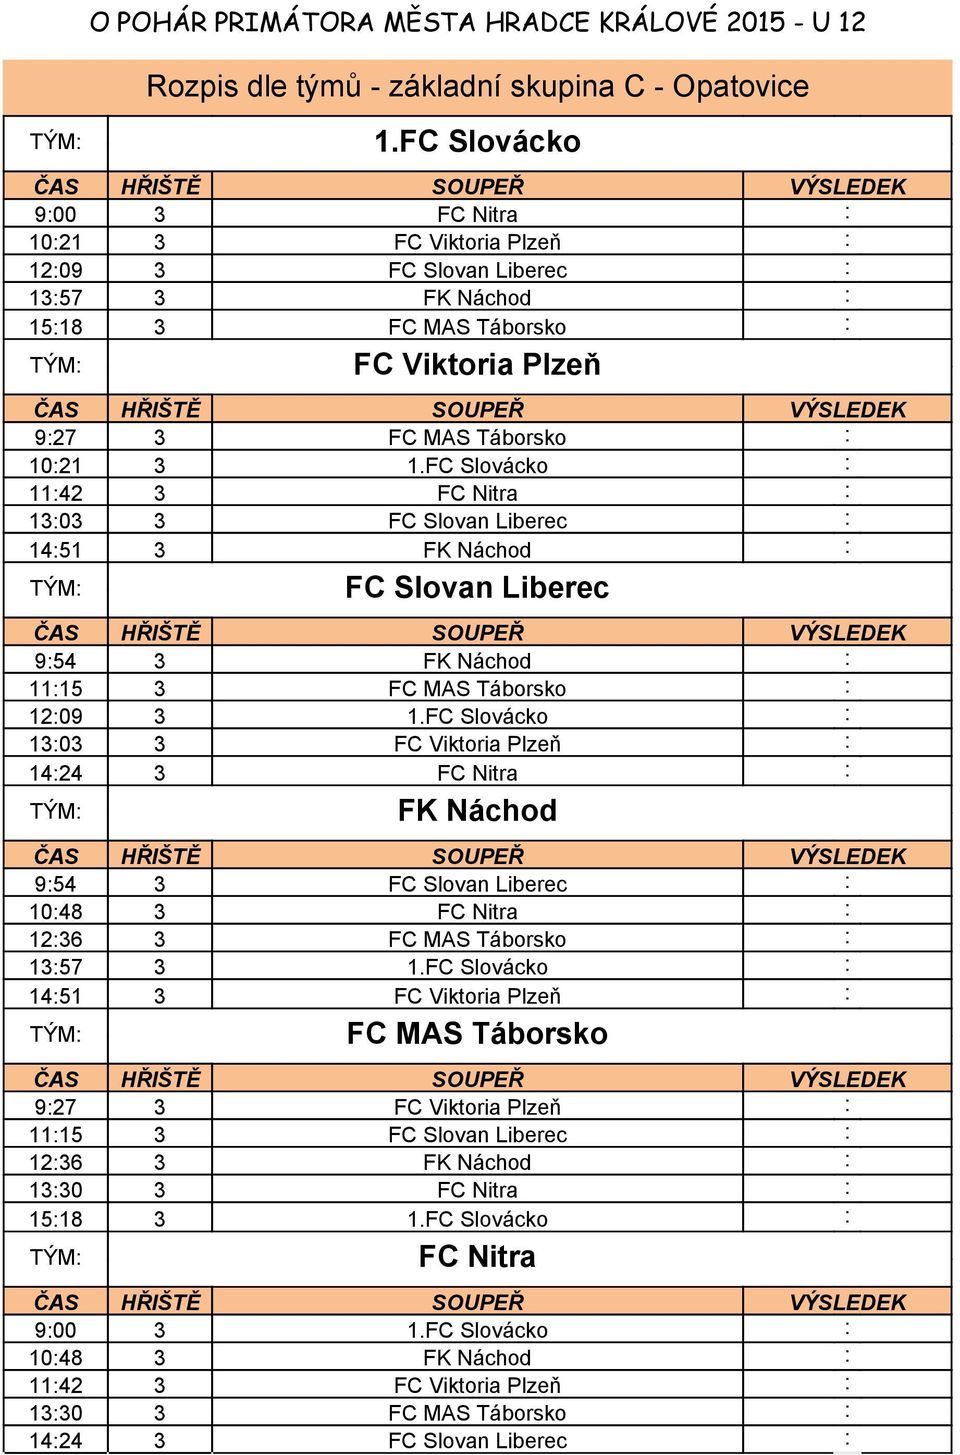 FC Slovácko : 11:42 3 FC Nitra : 13:03 3 FC Slovan Liberec : 14:51 3 FK Náchod : FC Slovan Liberec 9:54 3 FK Náchod : 11:15 3 FC MAS Táborsko : 12:09 3 1.